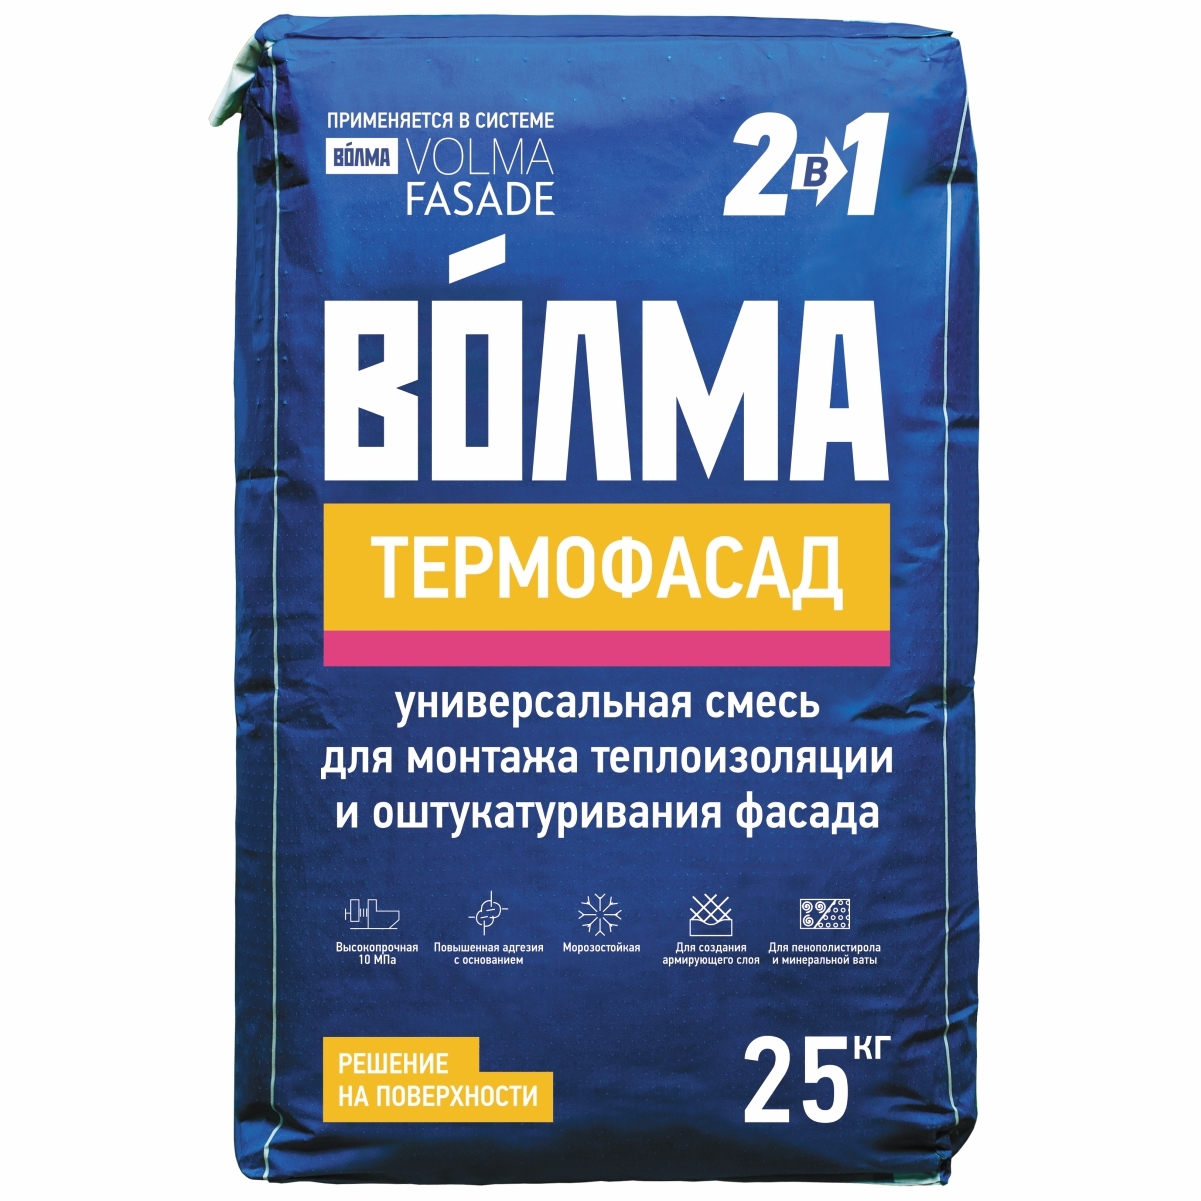 Штукатурно-клеевая смесь Волма Термофасад 25 кг в Санкт-Петербурге .